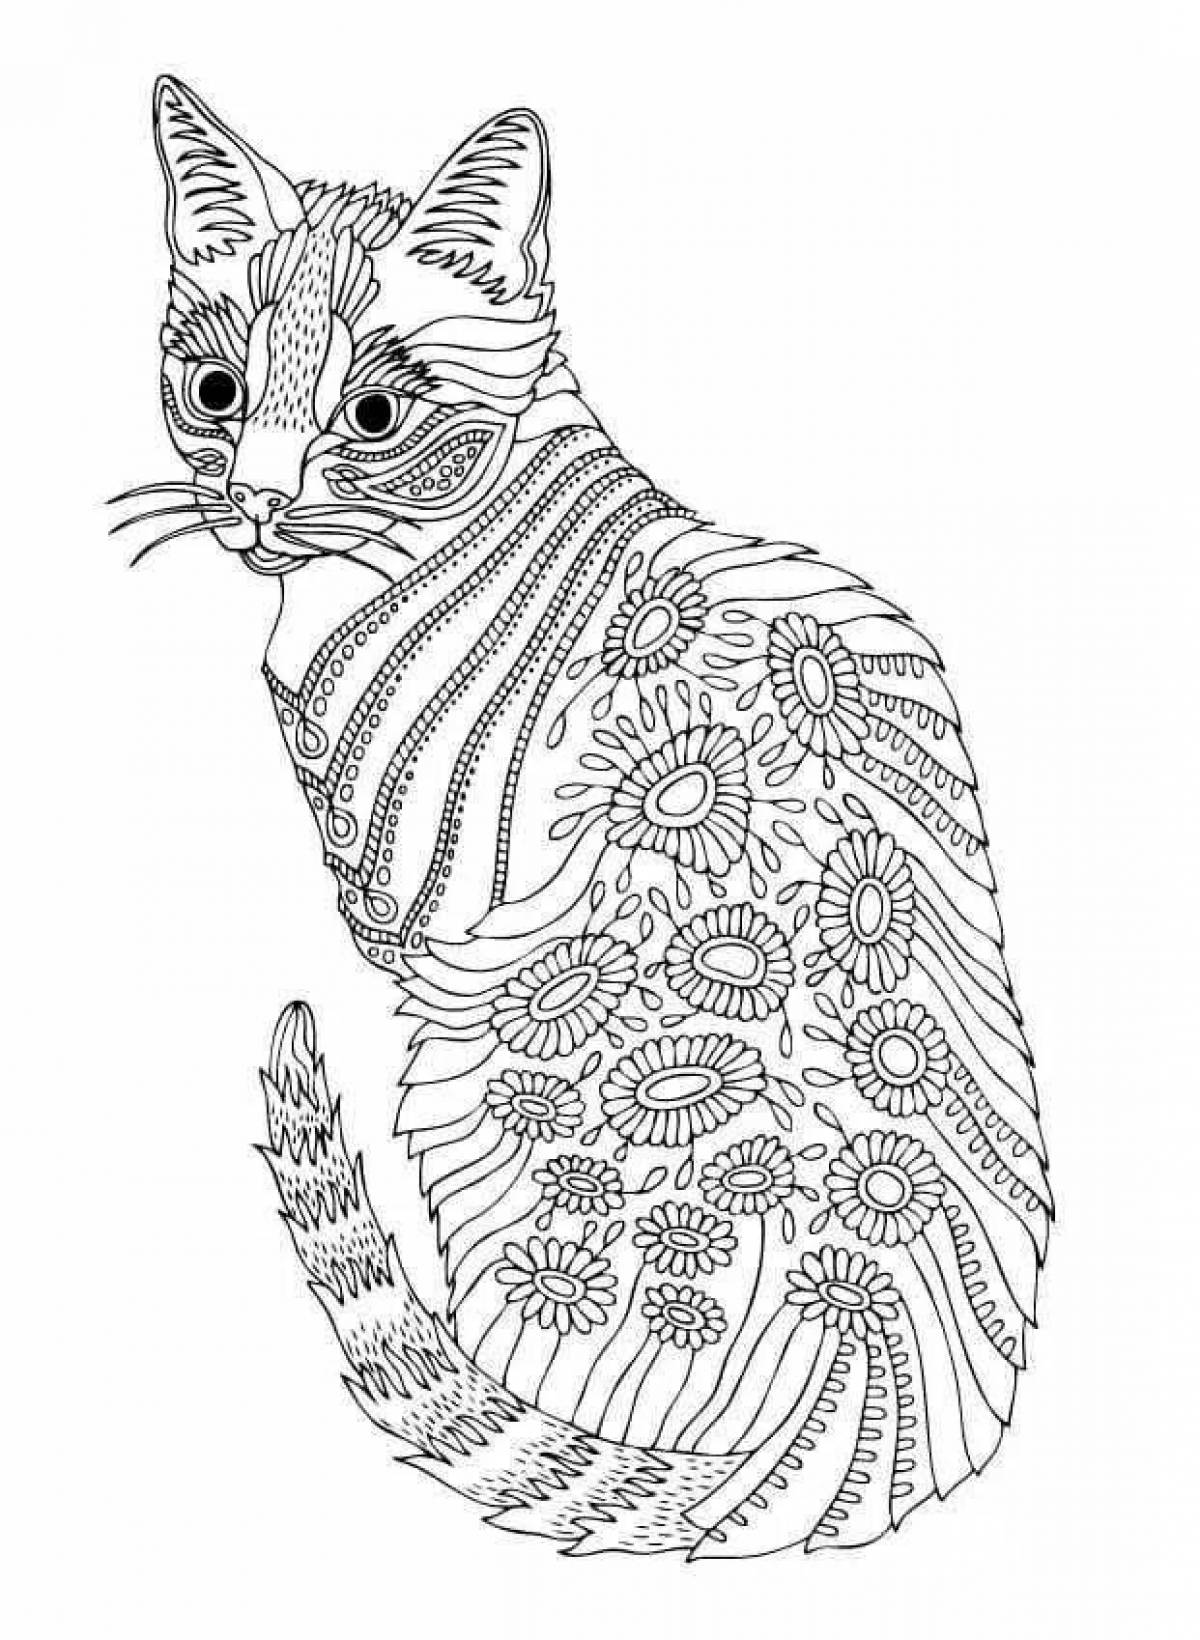 Comic coloring complex cat